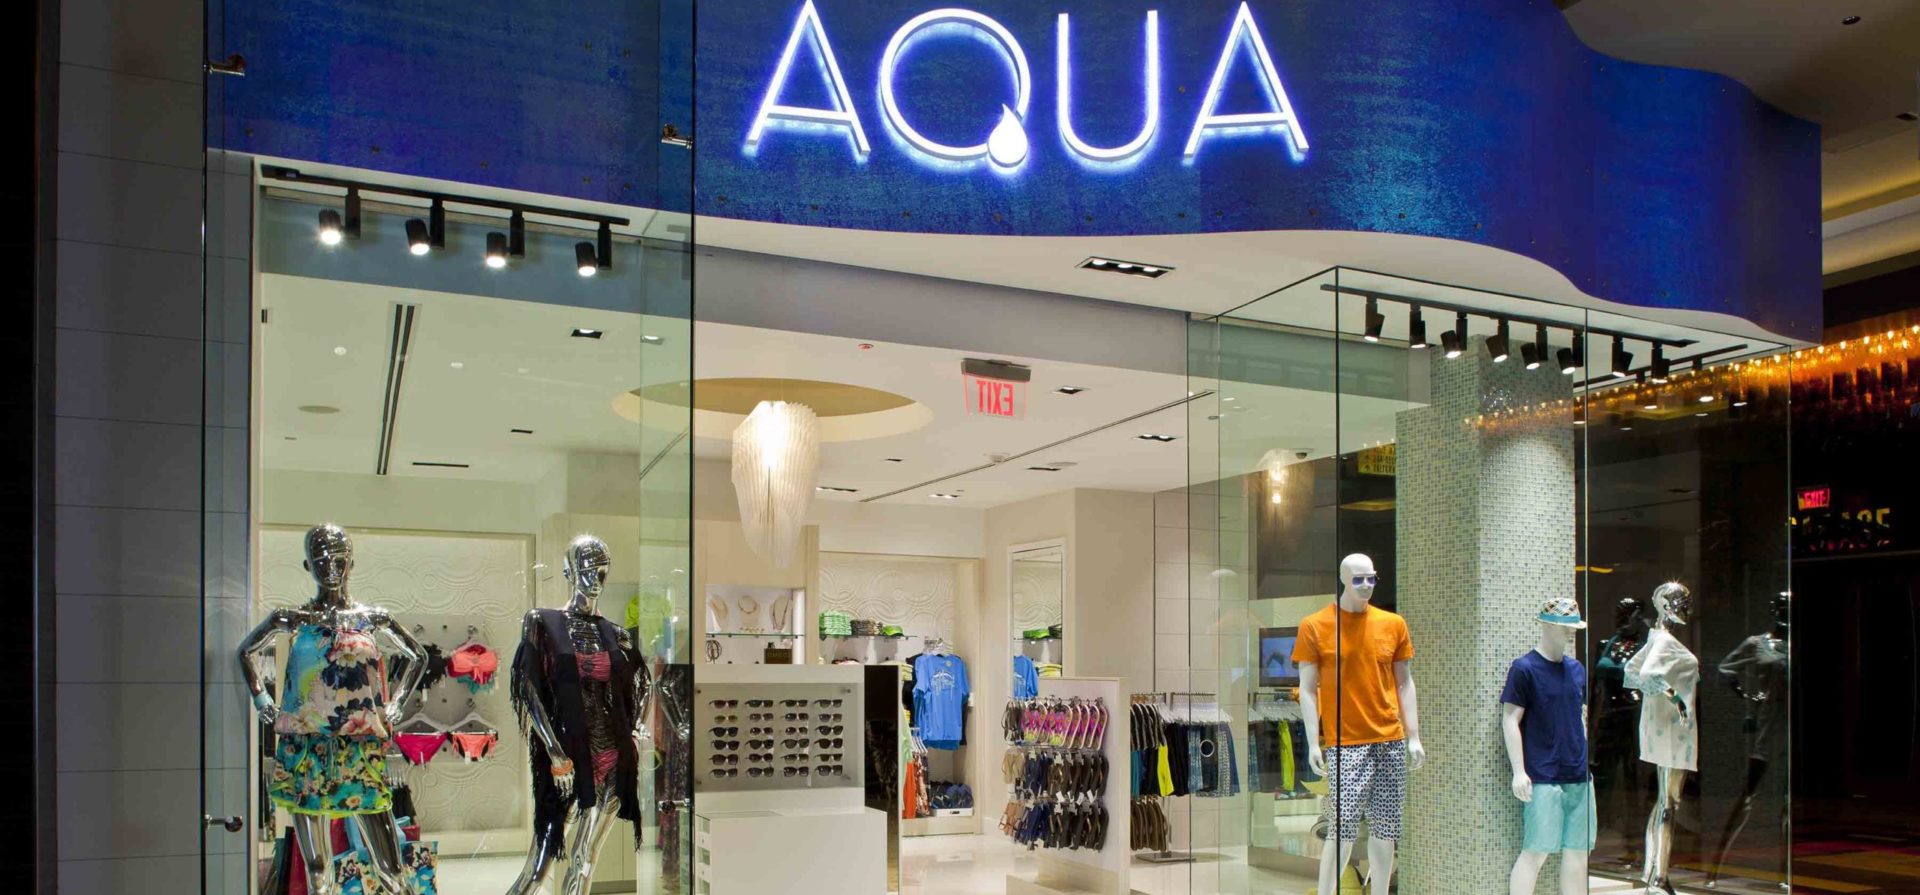 Golden Nugget Retail Stores: Aqua